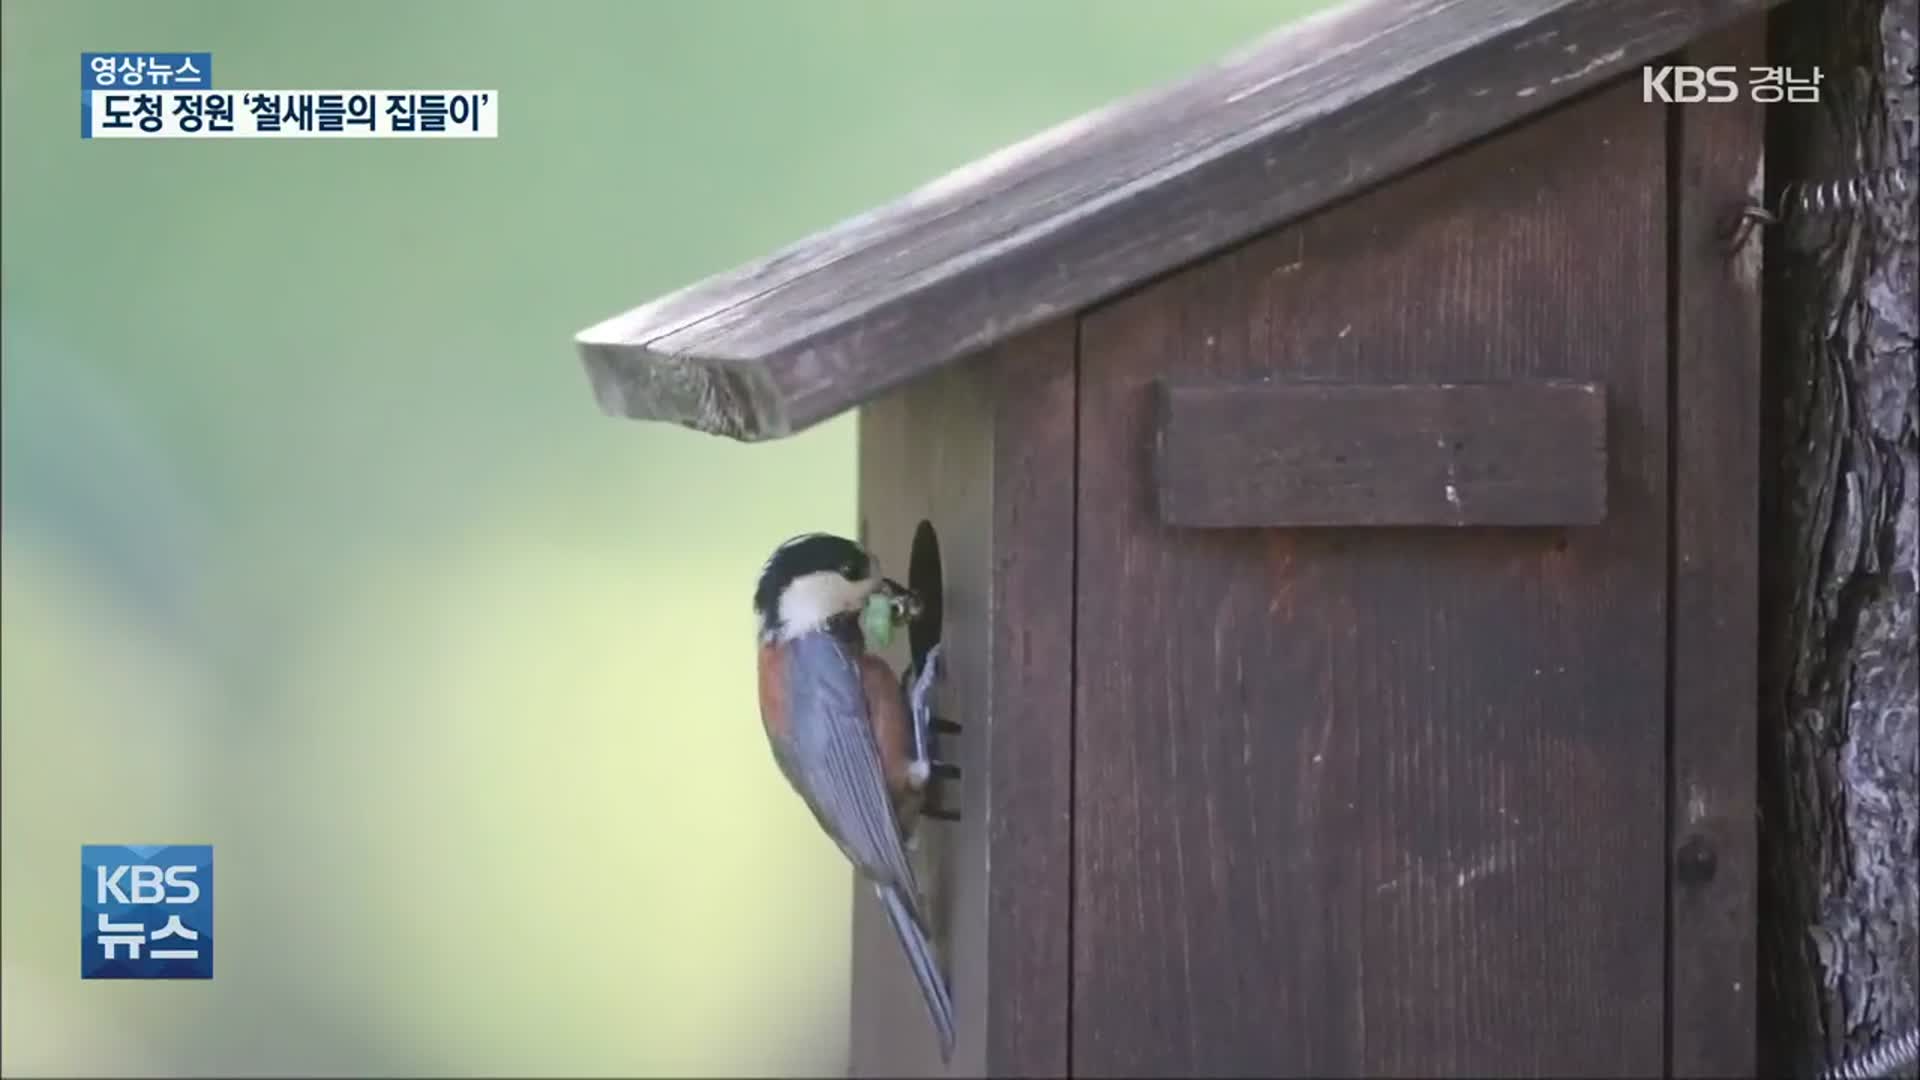 [영상] “새집이 생겼어요!”…‘도청 철새들’의 집들이